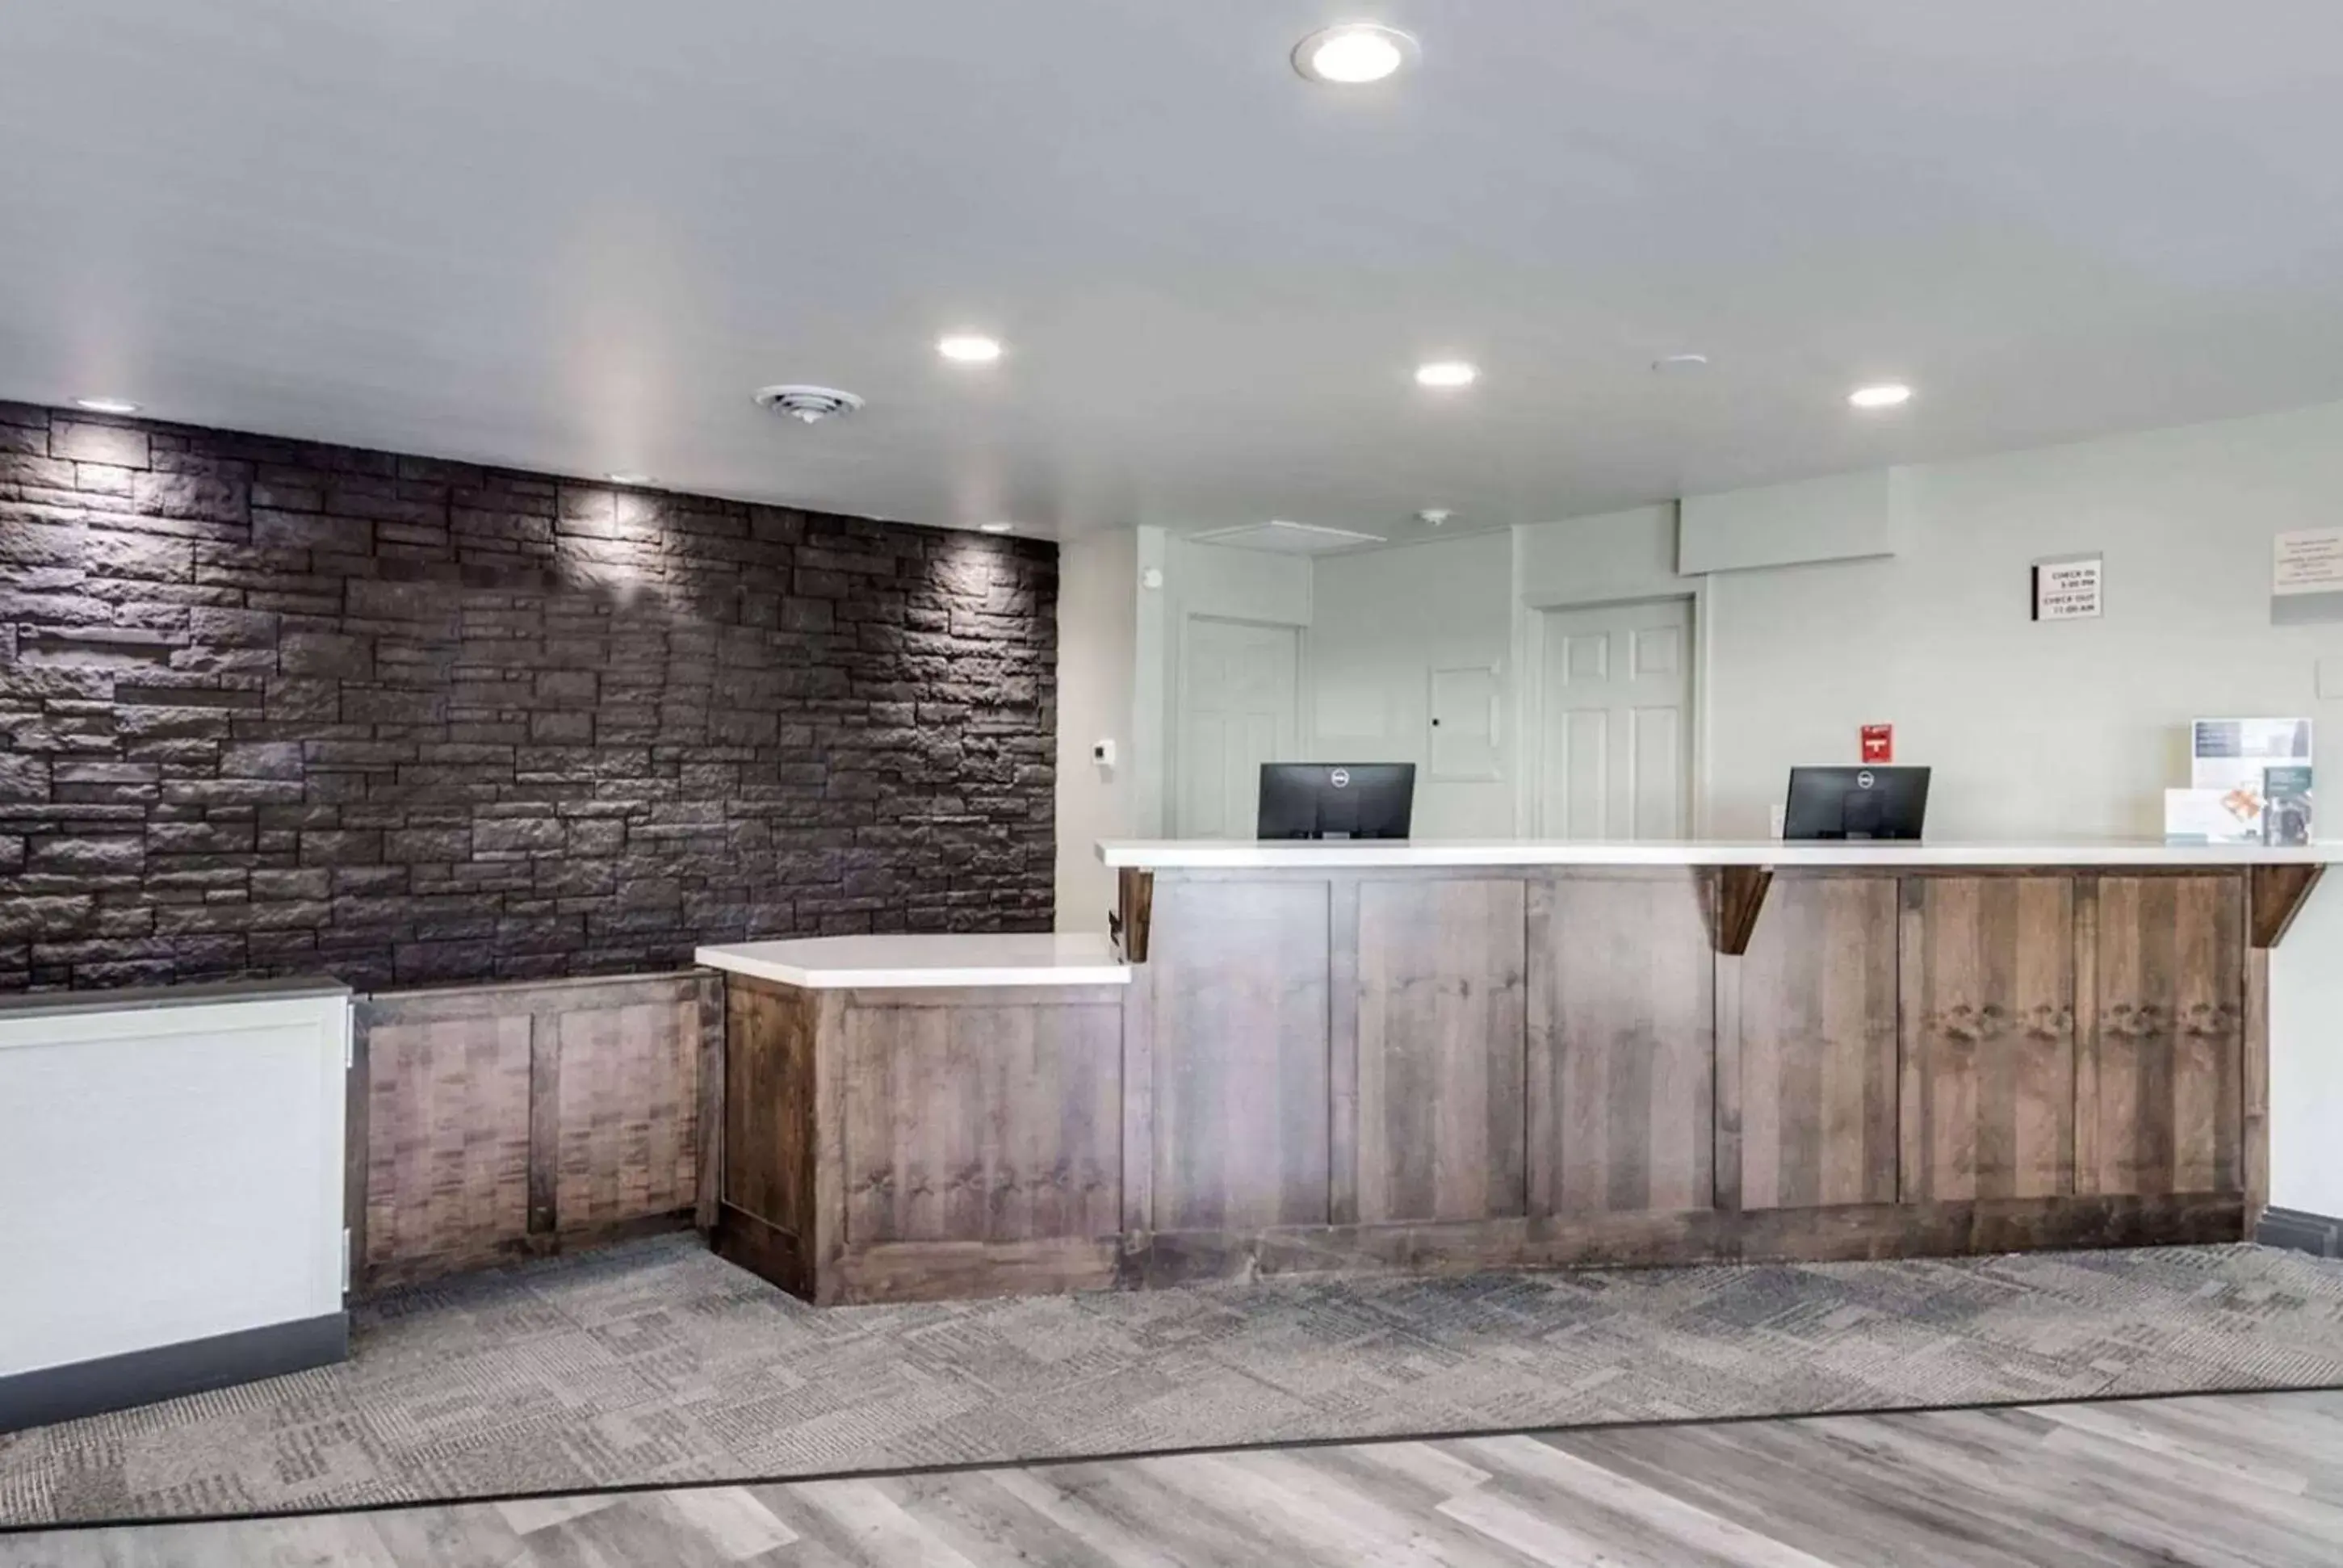 Lobby or reception, Lobby/Reception in Days Inn & Suites by Wyndham Spokane